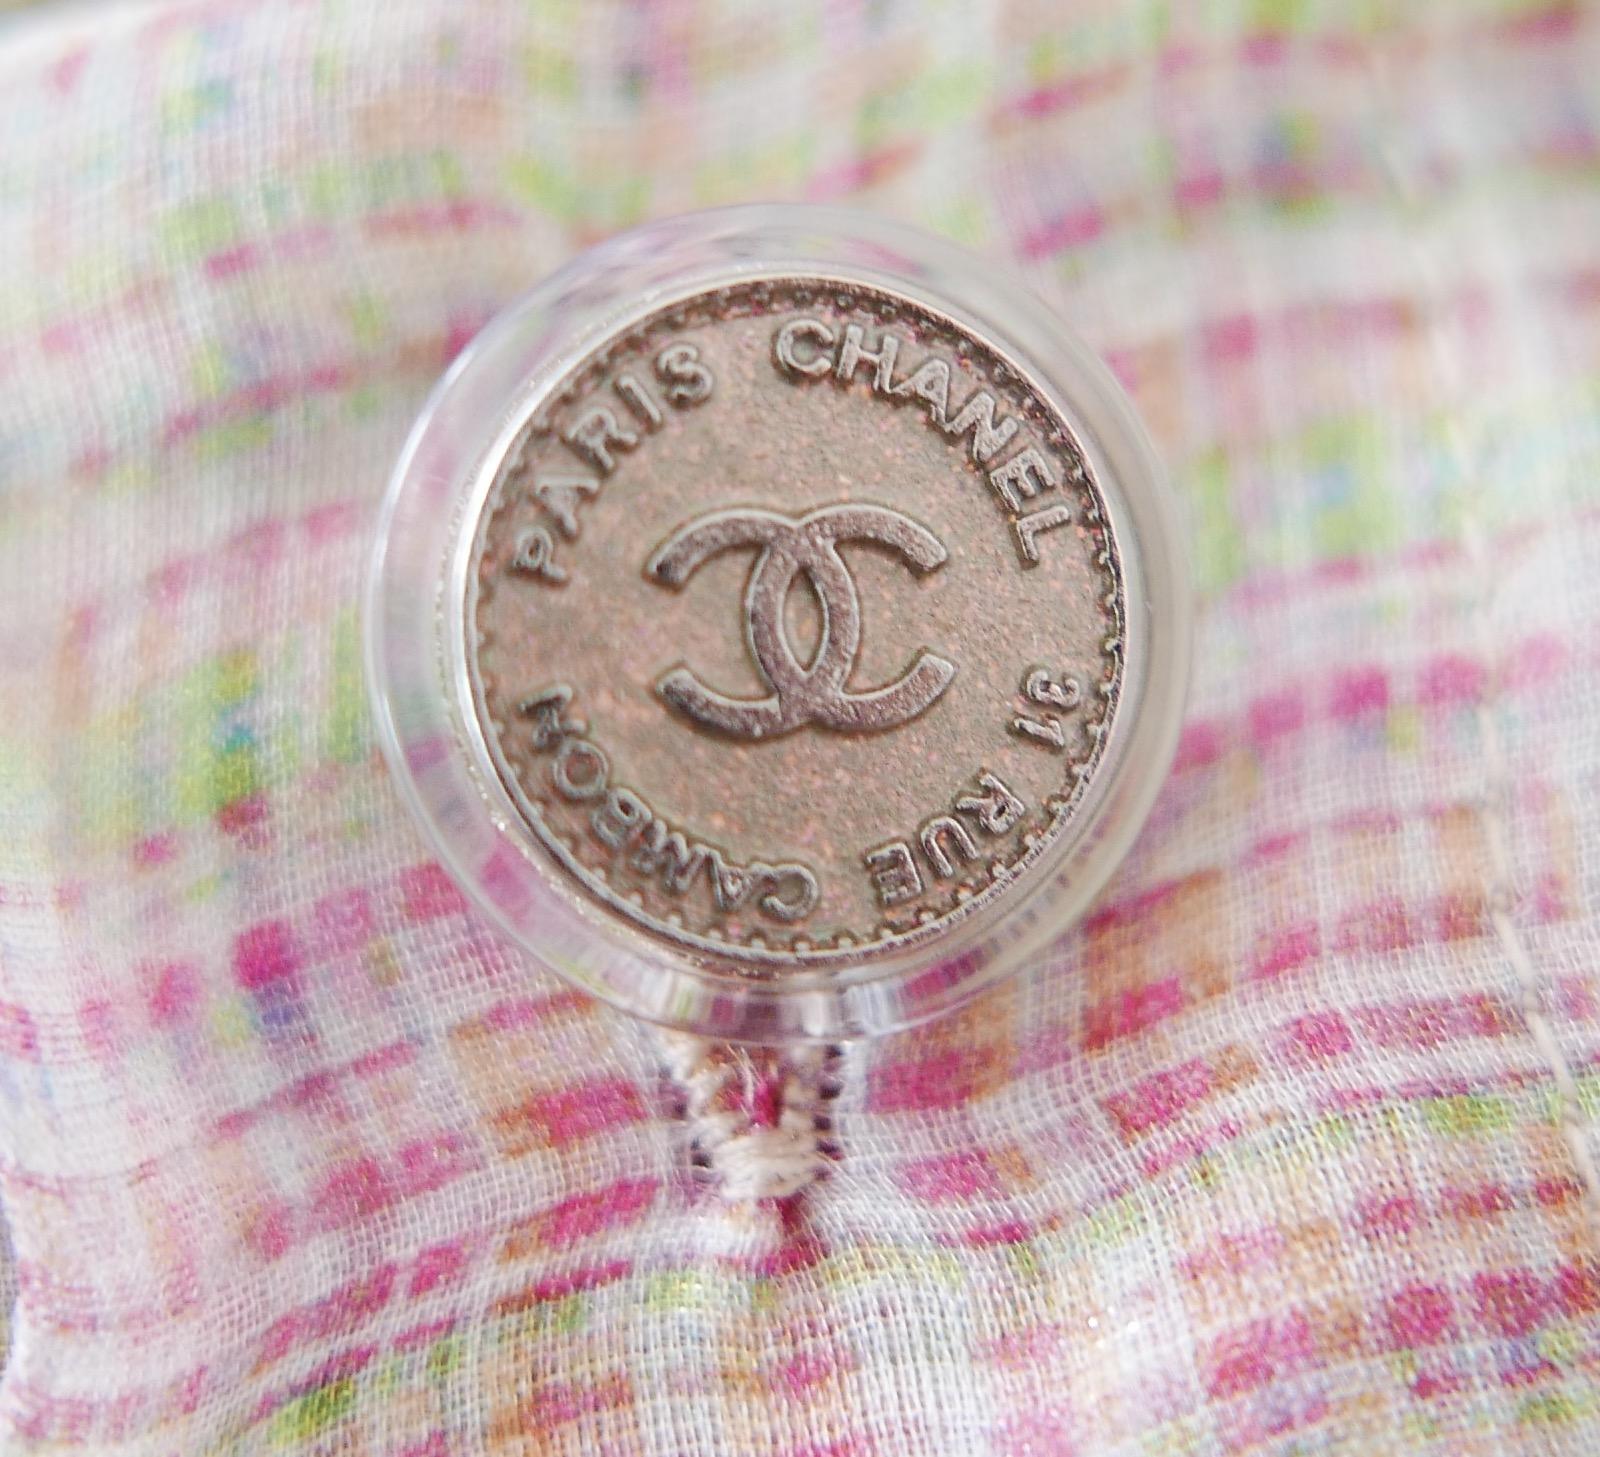 Superbe blouse Chanel issue de la Collectional printemps 2018. Acheté pour £2250. Neuf avec étiquette/échantillon de tissu/boutons de rechange. J'ai aussi la jupe assortie. Réalisé en soie à carreaux pastel et en polyamide, il présente un éclat